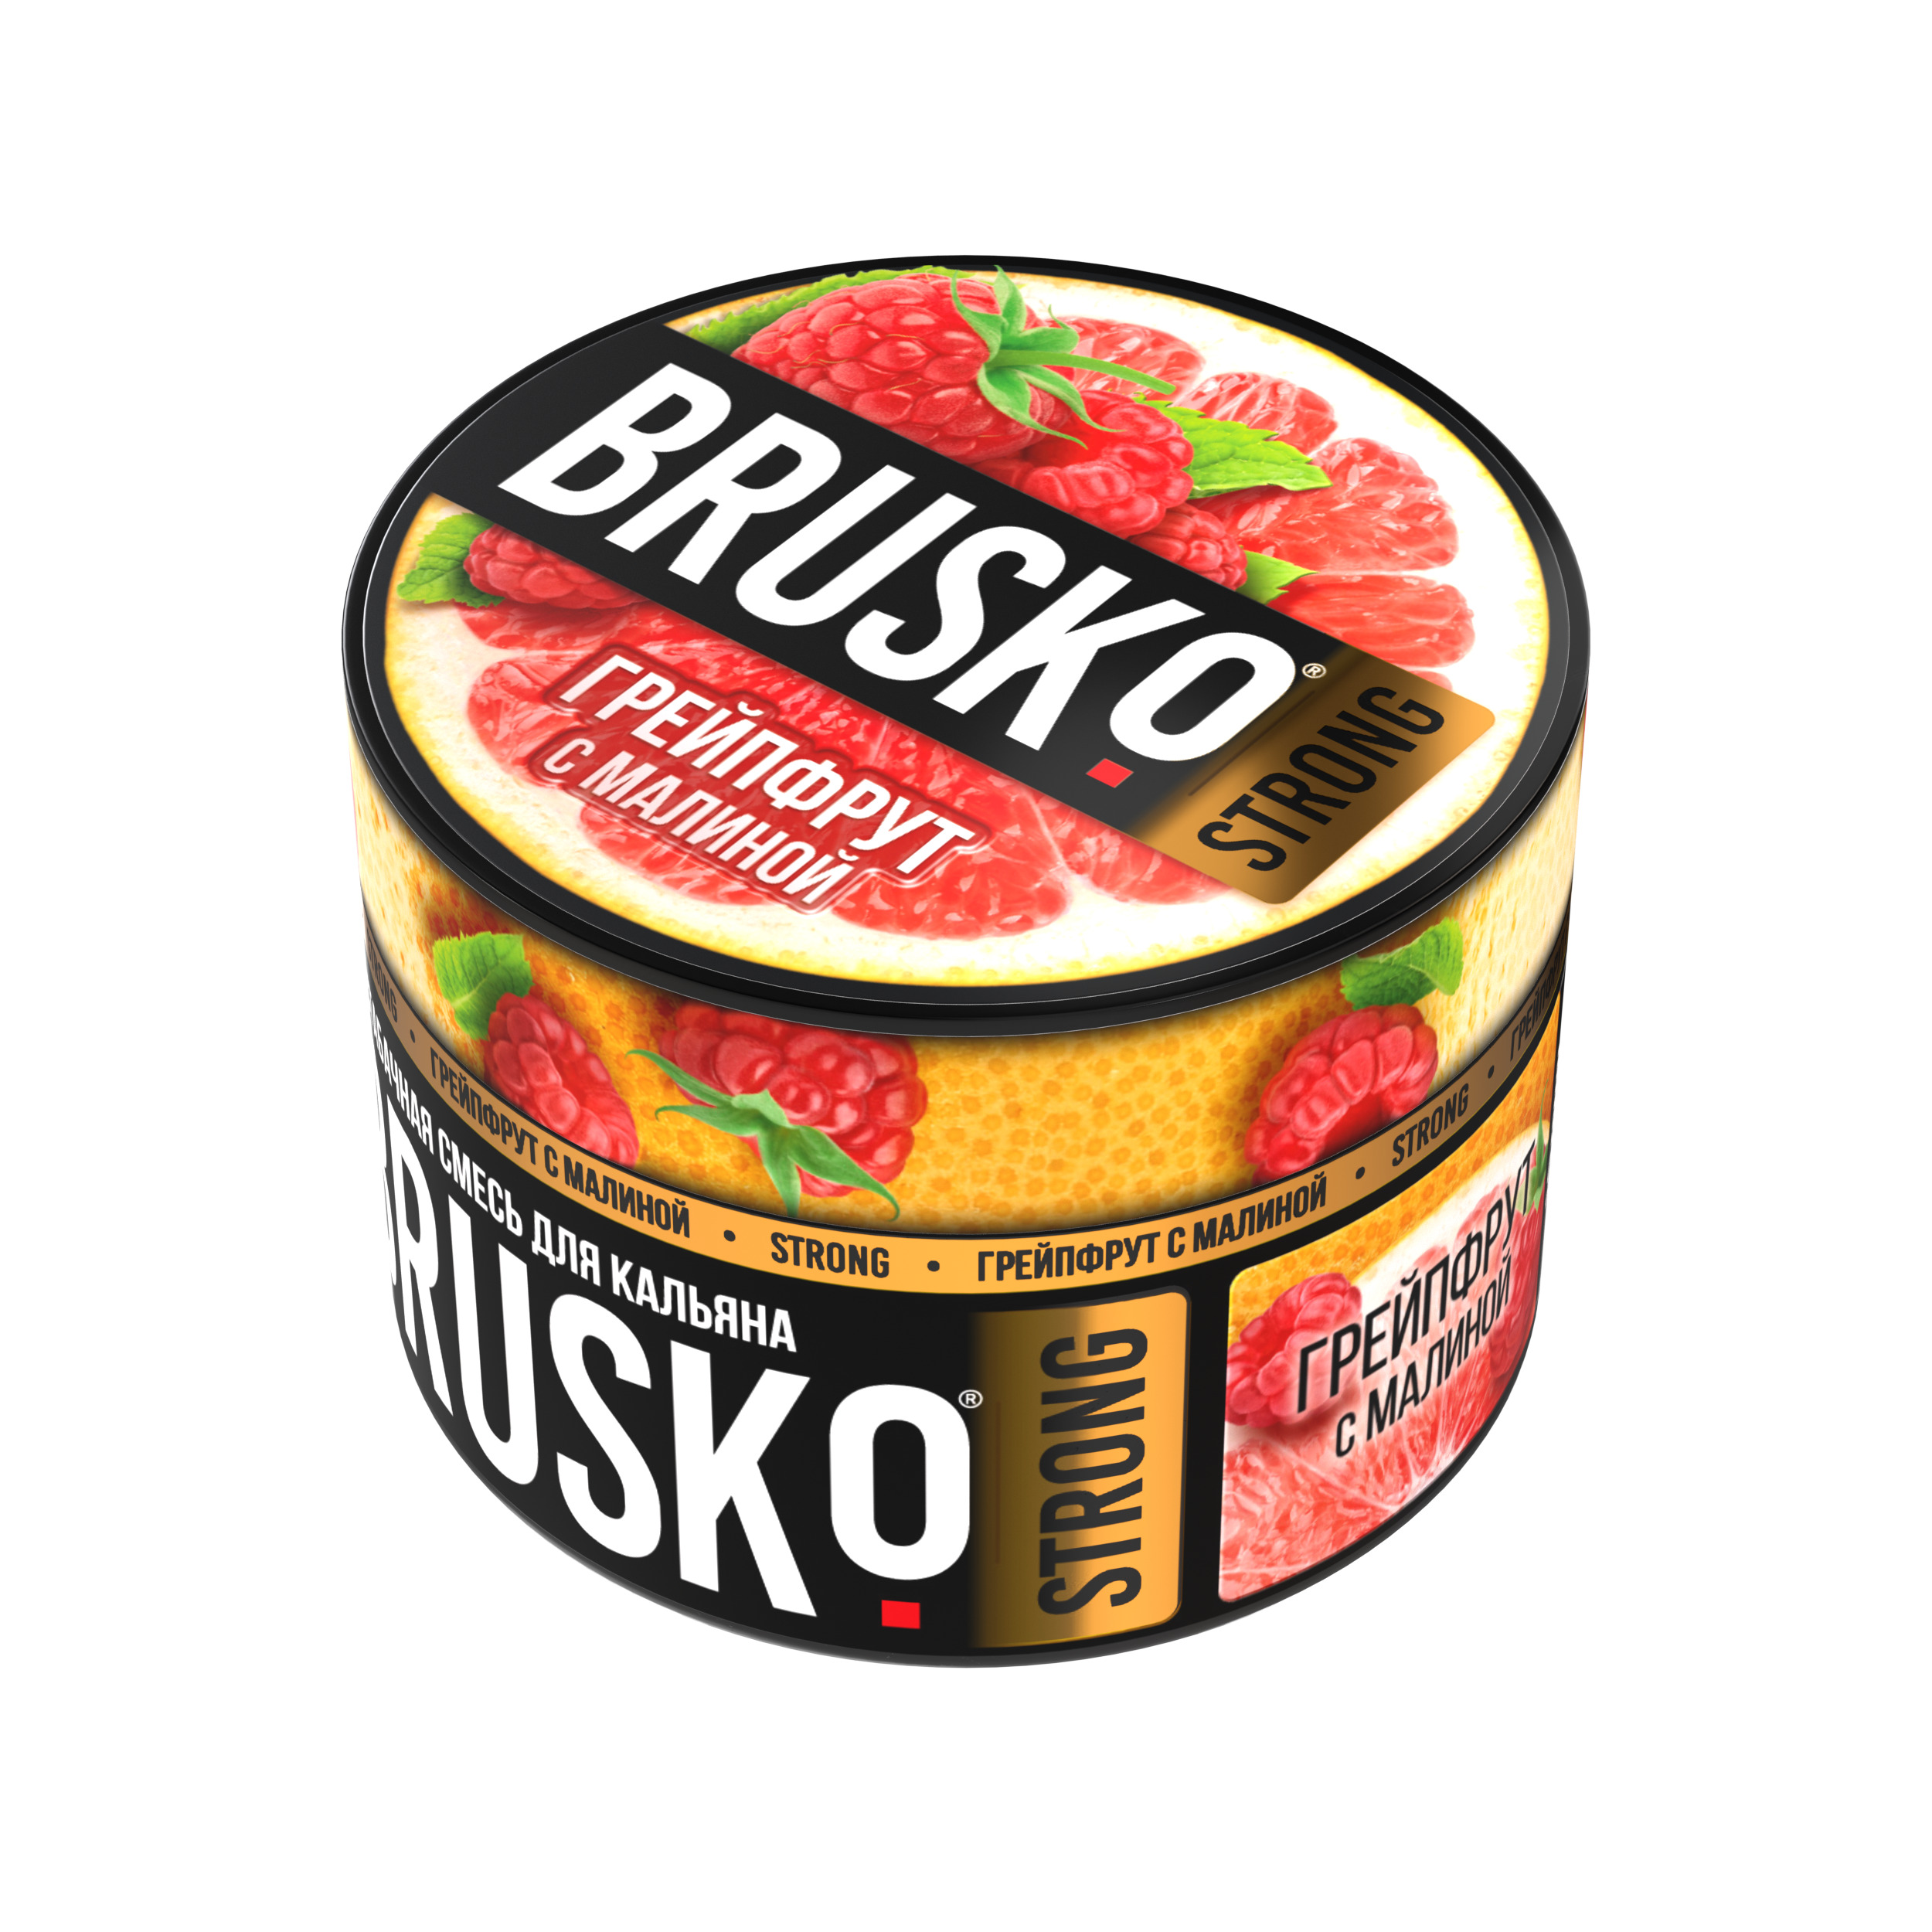 Бестабачная смесь для кальяна BRUSKO, 50 г, Грейпфрут с малиной, Strong (М)